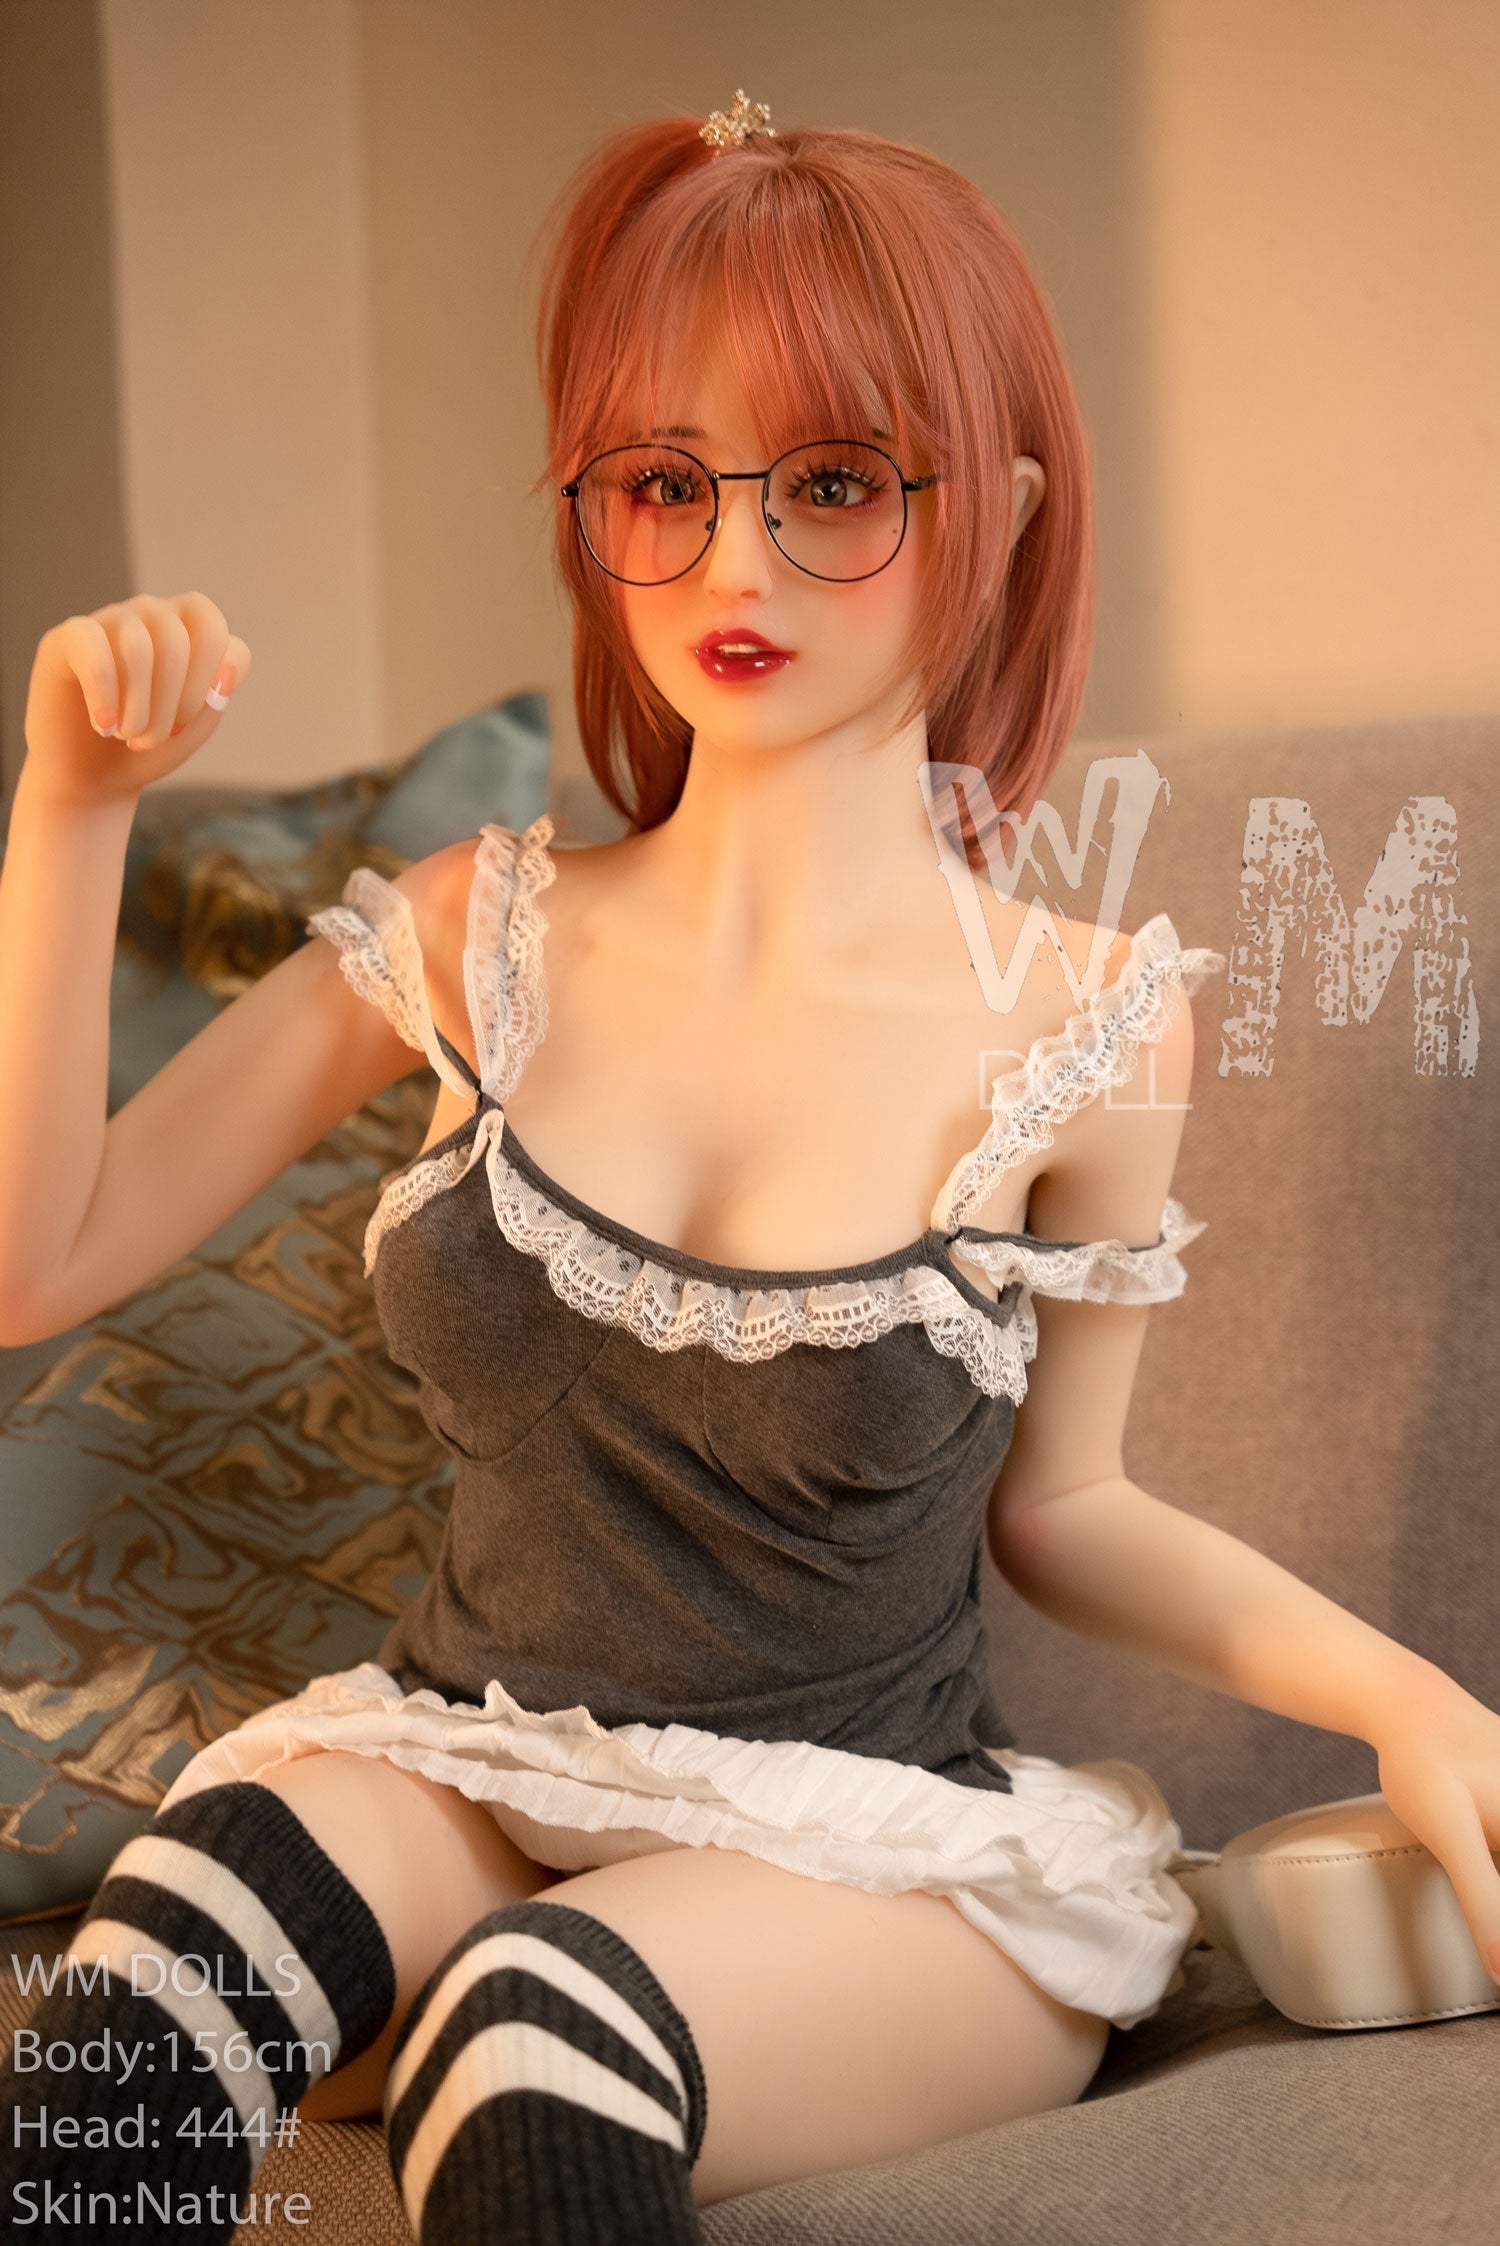 WM Doll 156 cm C TPE - Alaia | Sex Dolls SG